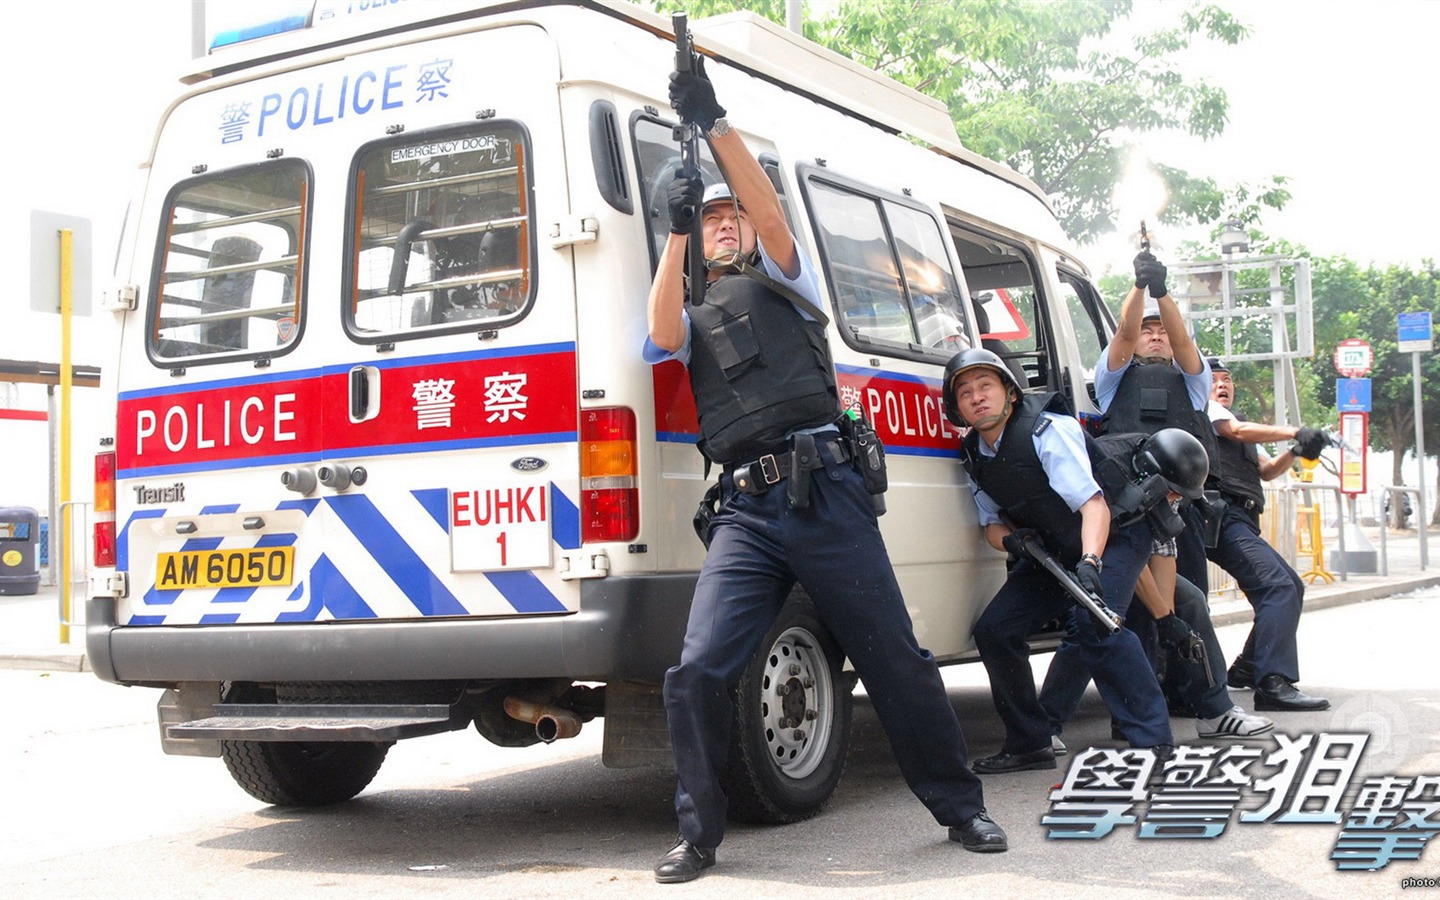 Beliebte TVB Schauspielschule Police Sniper #2 - 1440x900